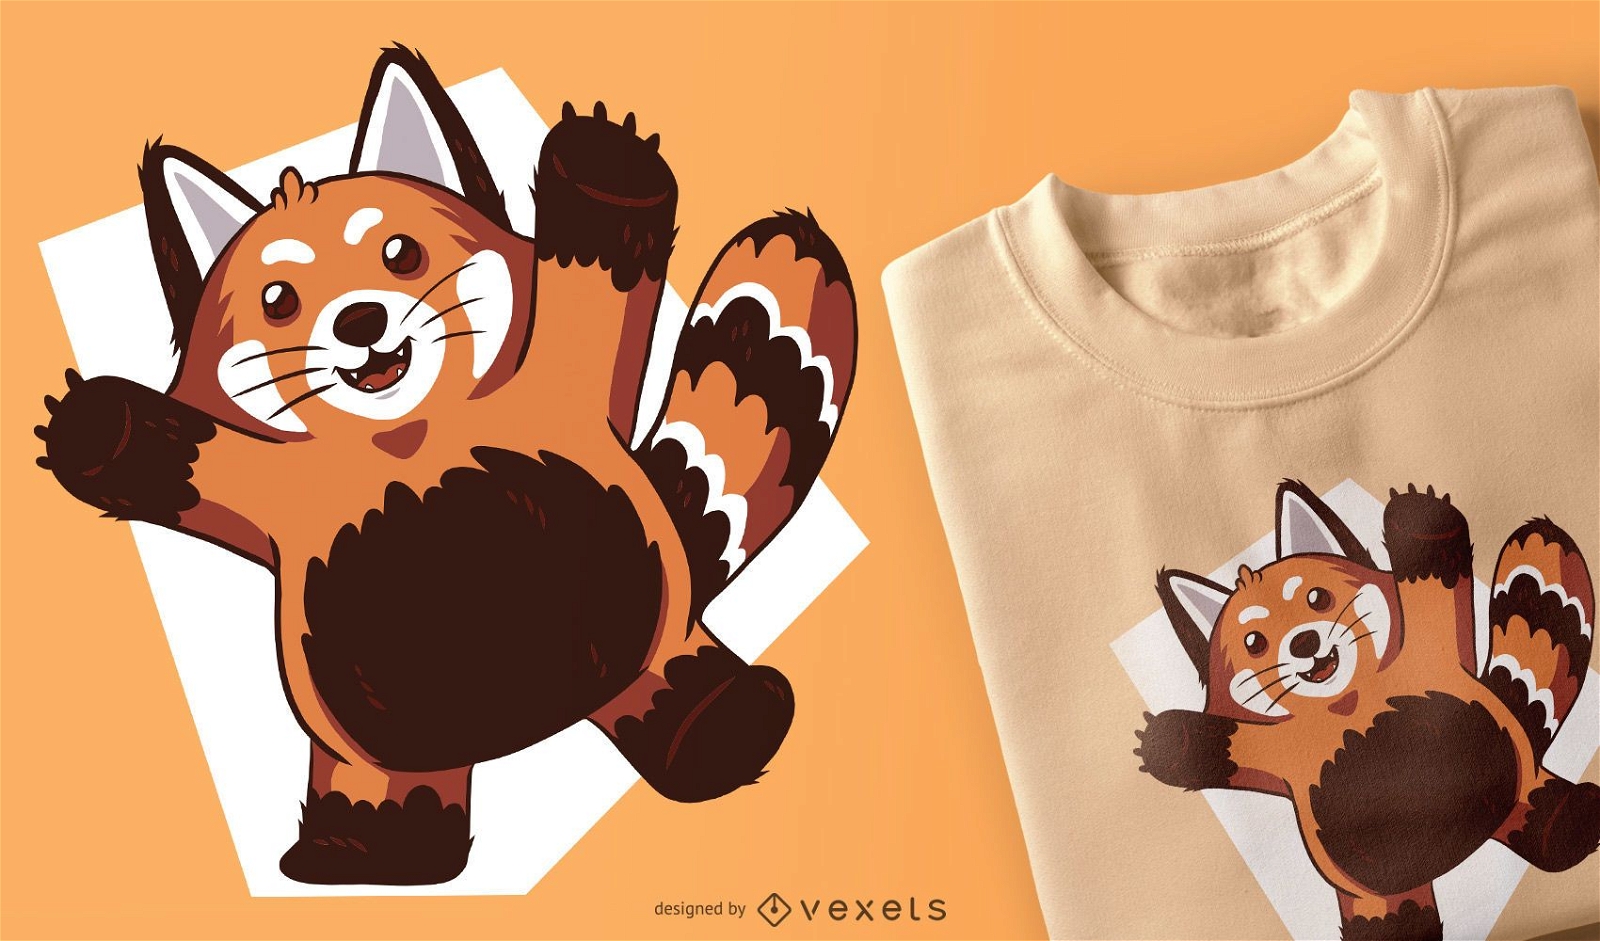 Design de camisetas do Panda Vermelho